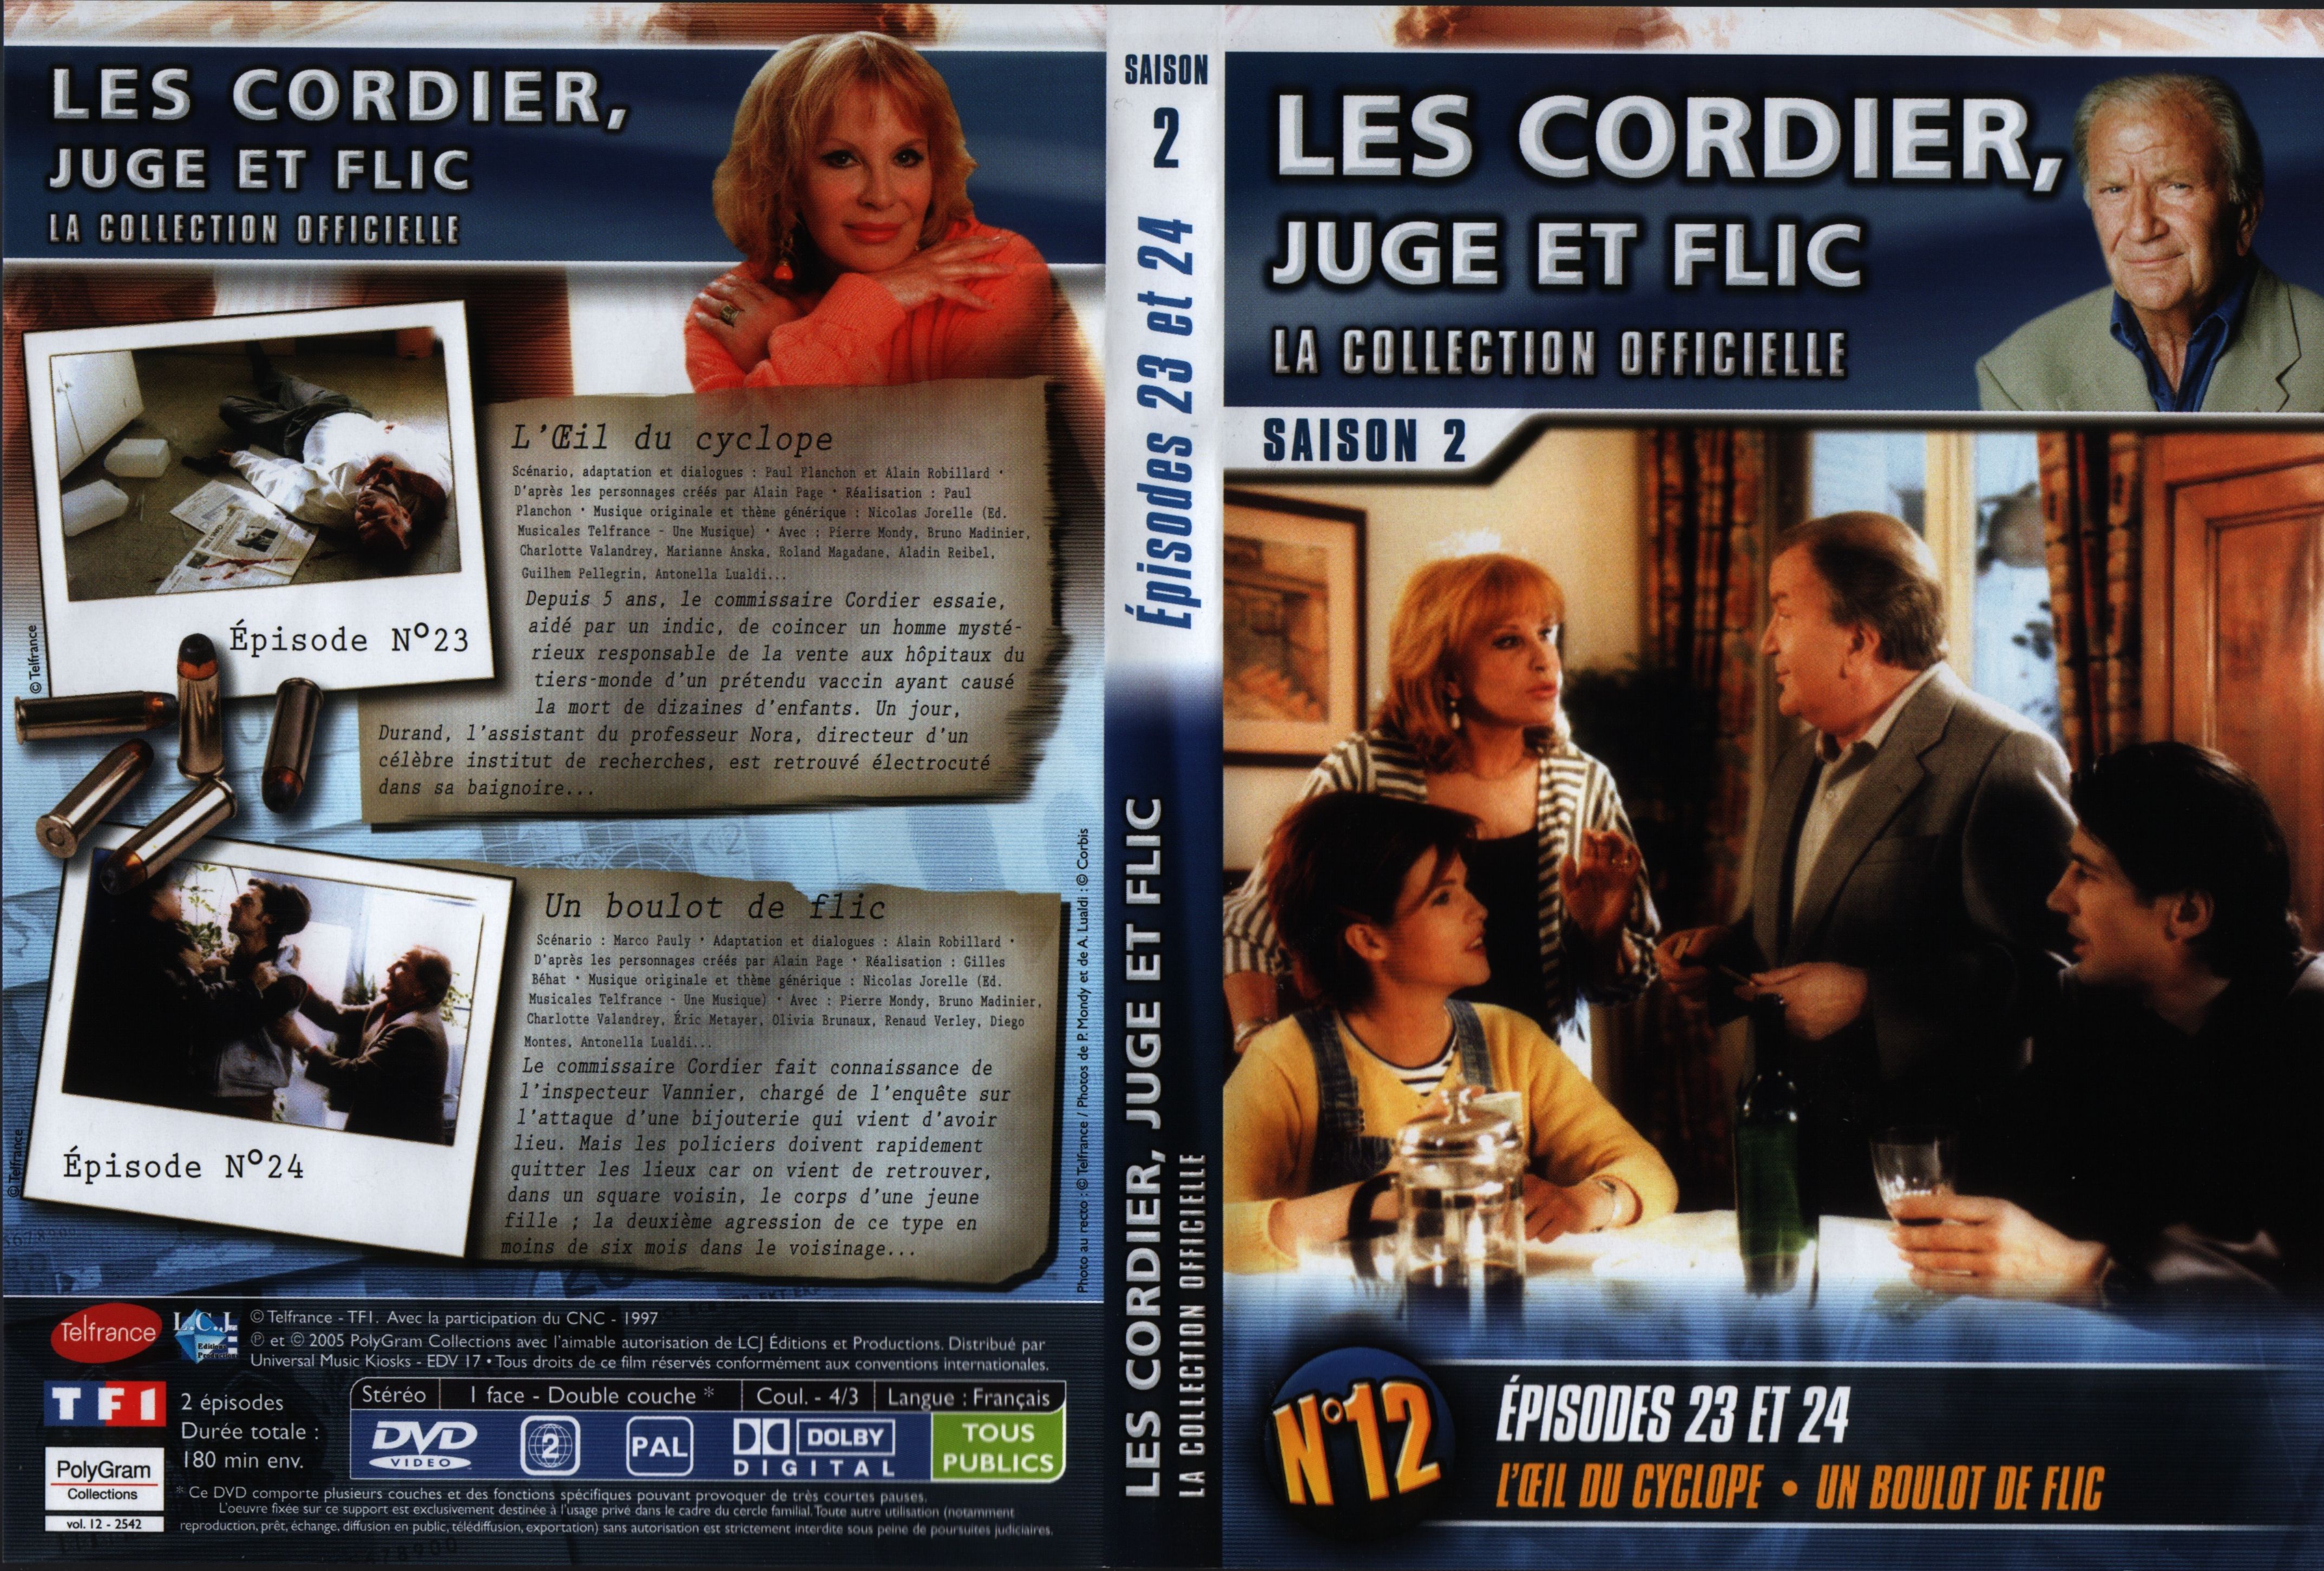 Jaquette DVD Les cordier juge et flic Saison 2 vol 12